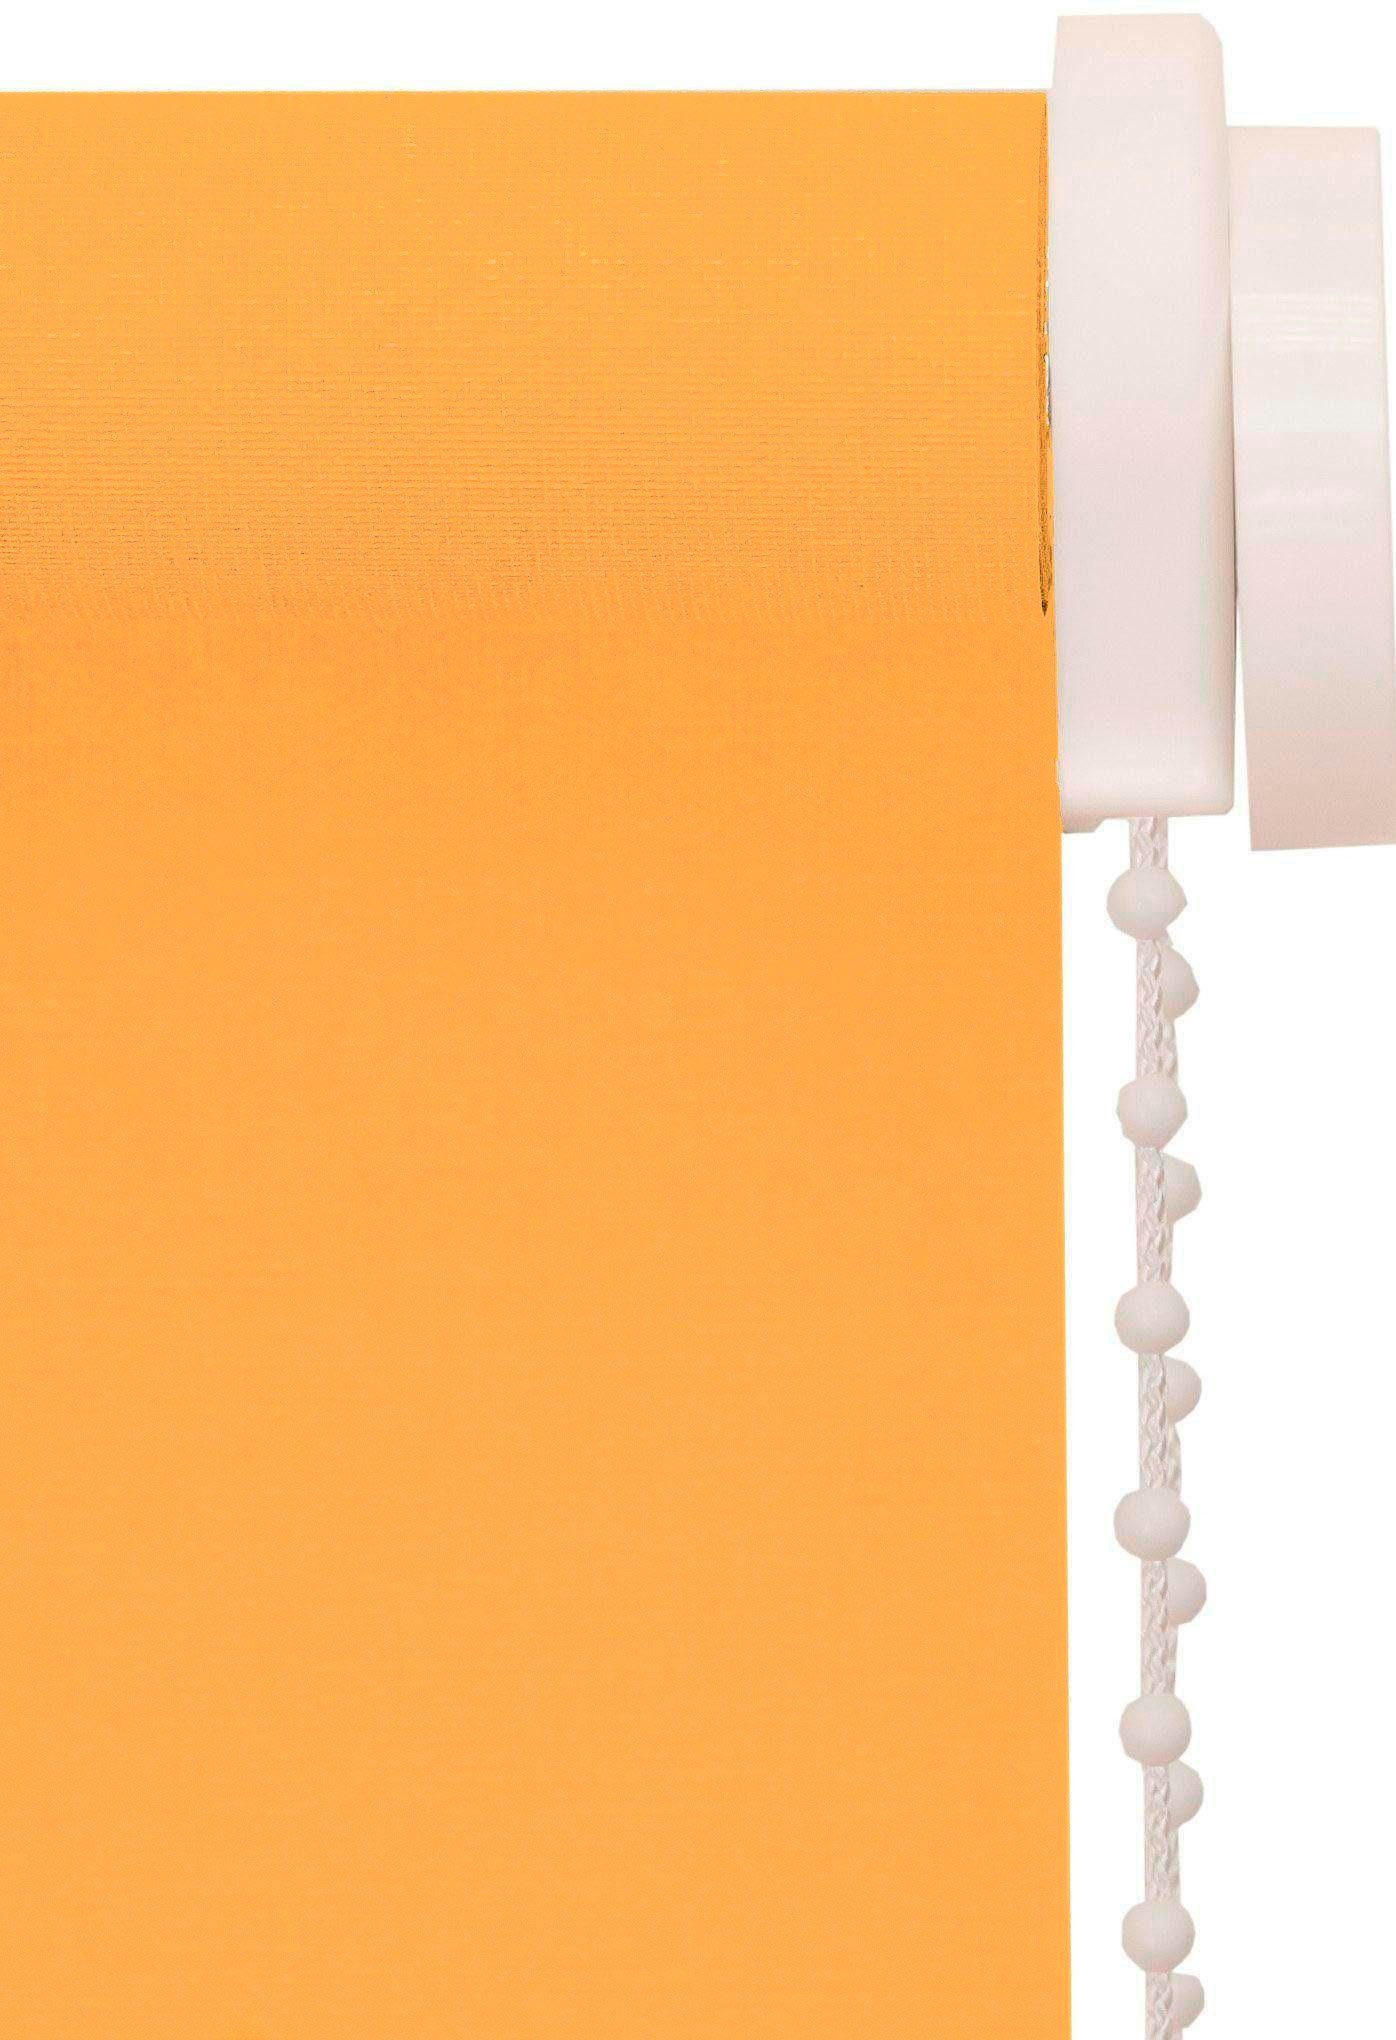 Seitenzugrollo One size Style sunlines, Germany in Peach, freihängend, Lichtschutz, verschraubt, Made